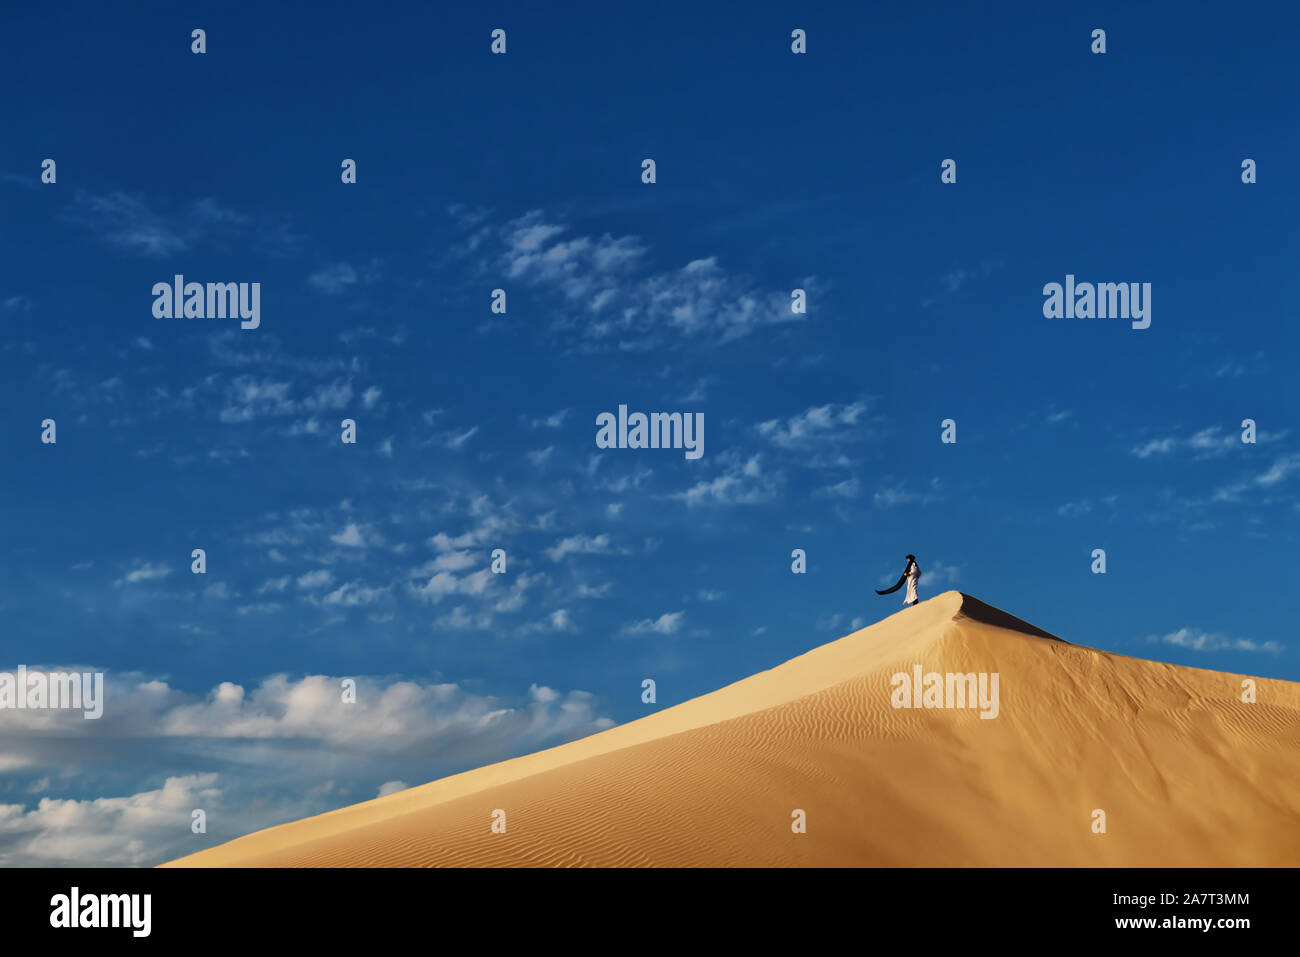 Traditionell gekleidete Marokkaner steht auf einer Sanddüne gegen ein bewölkter Himmel, Wüste Sahara, Marokko. Stockfoto